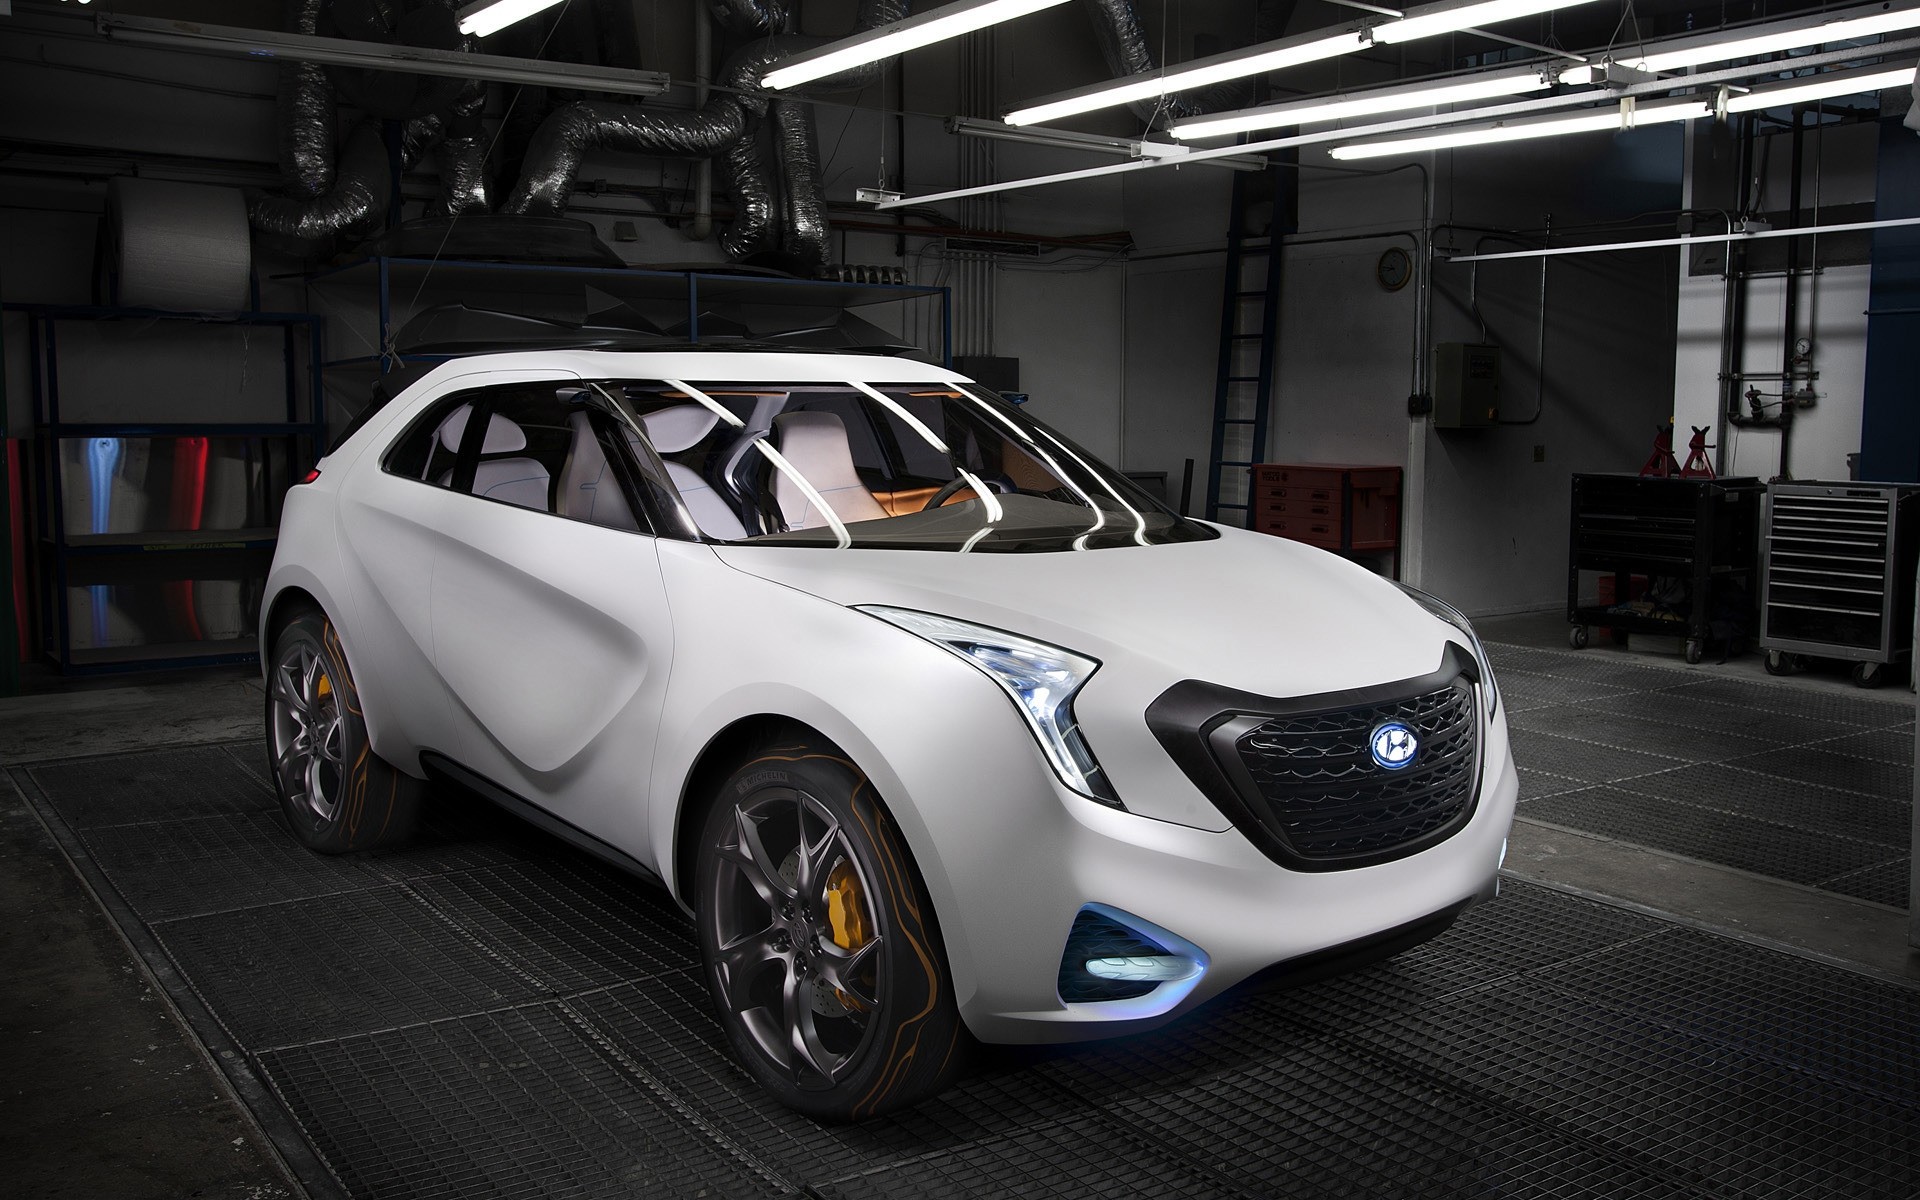 concept cars car vehicle automotive transportation system wheel coupe exhibition drive hyundai concept